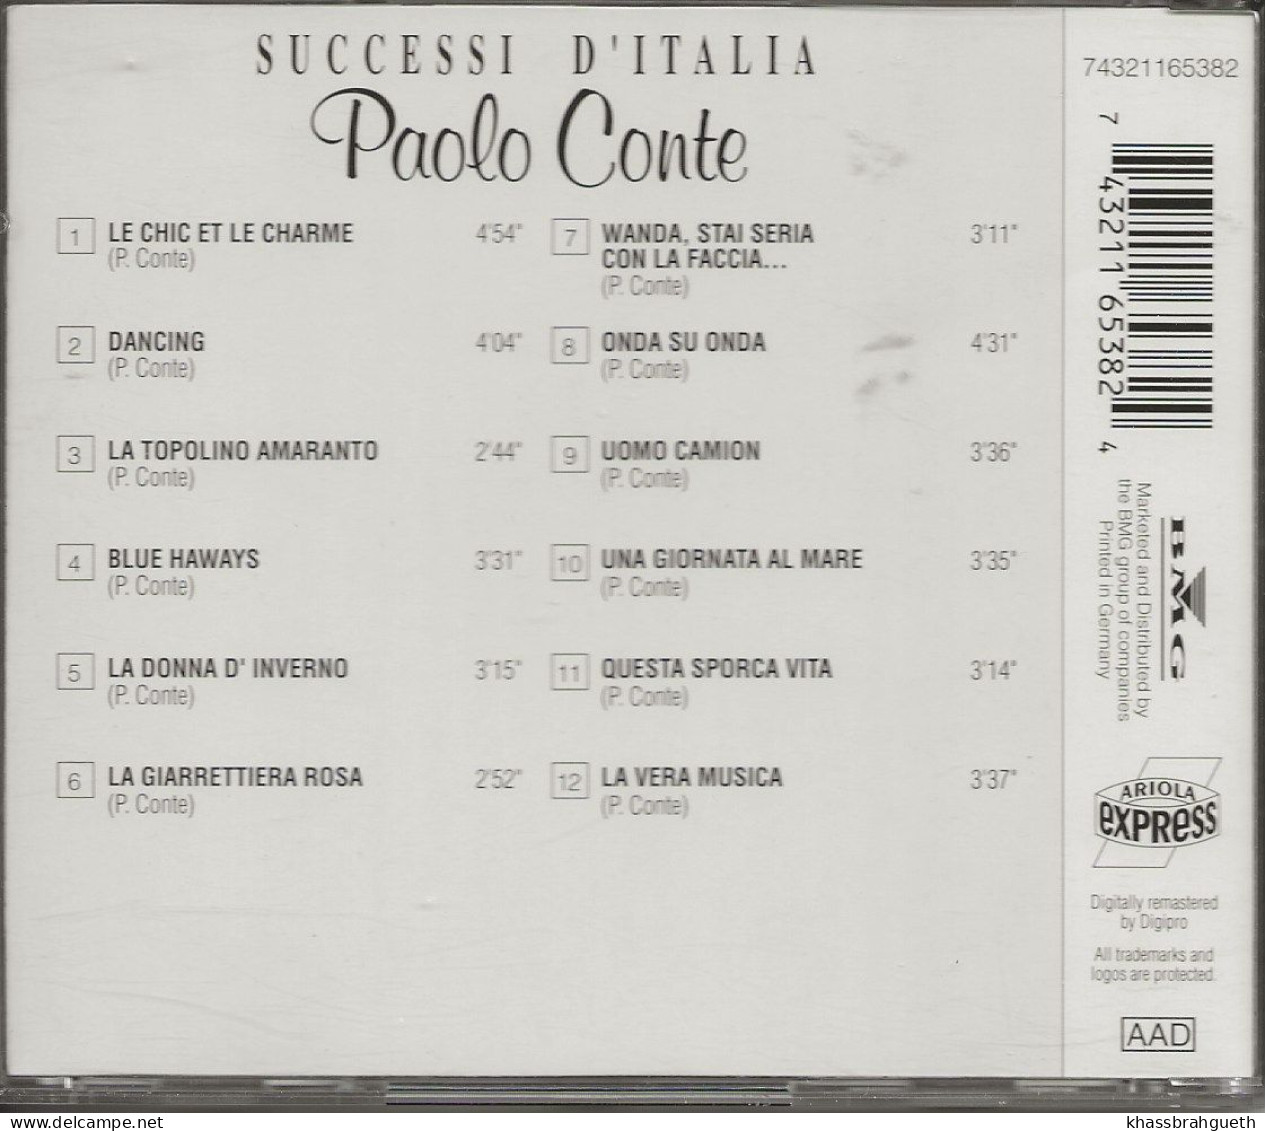 PAOLO CONTE - SUCCESSI D'ITALIA - ARIOLA (1993) (CD ALBUM) - Sonstige - Italienische Musik